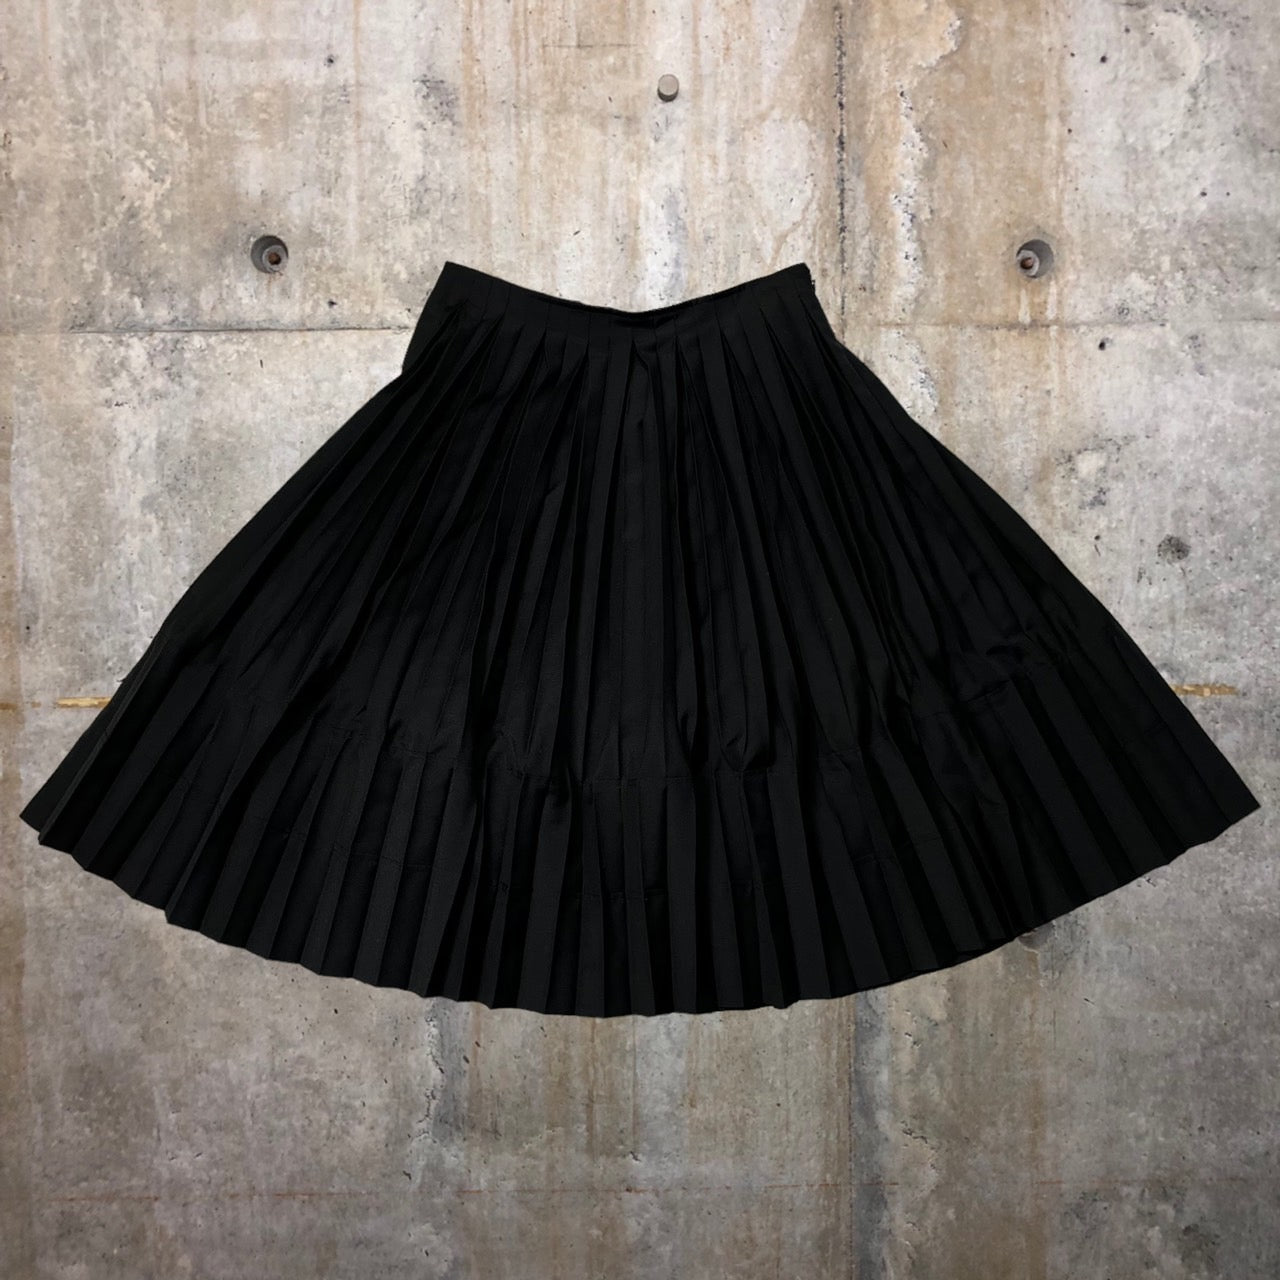 ジュンヤワタナベのプリーツスカートふくらはぎ丈透け感があります